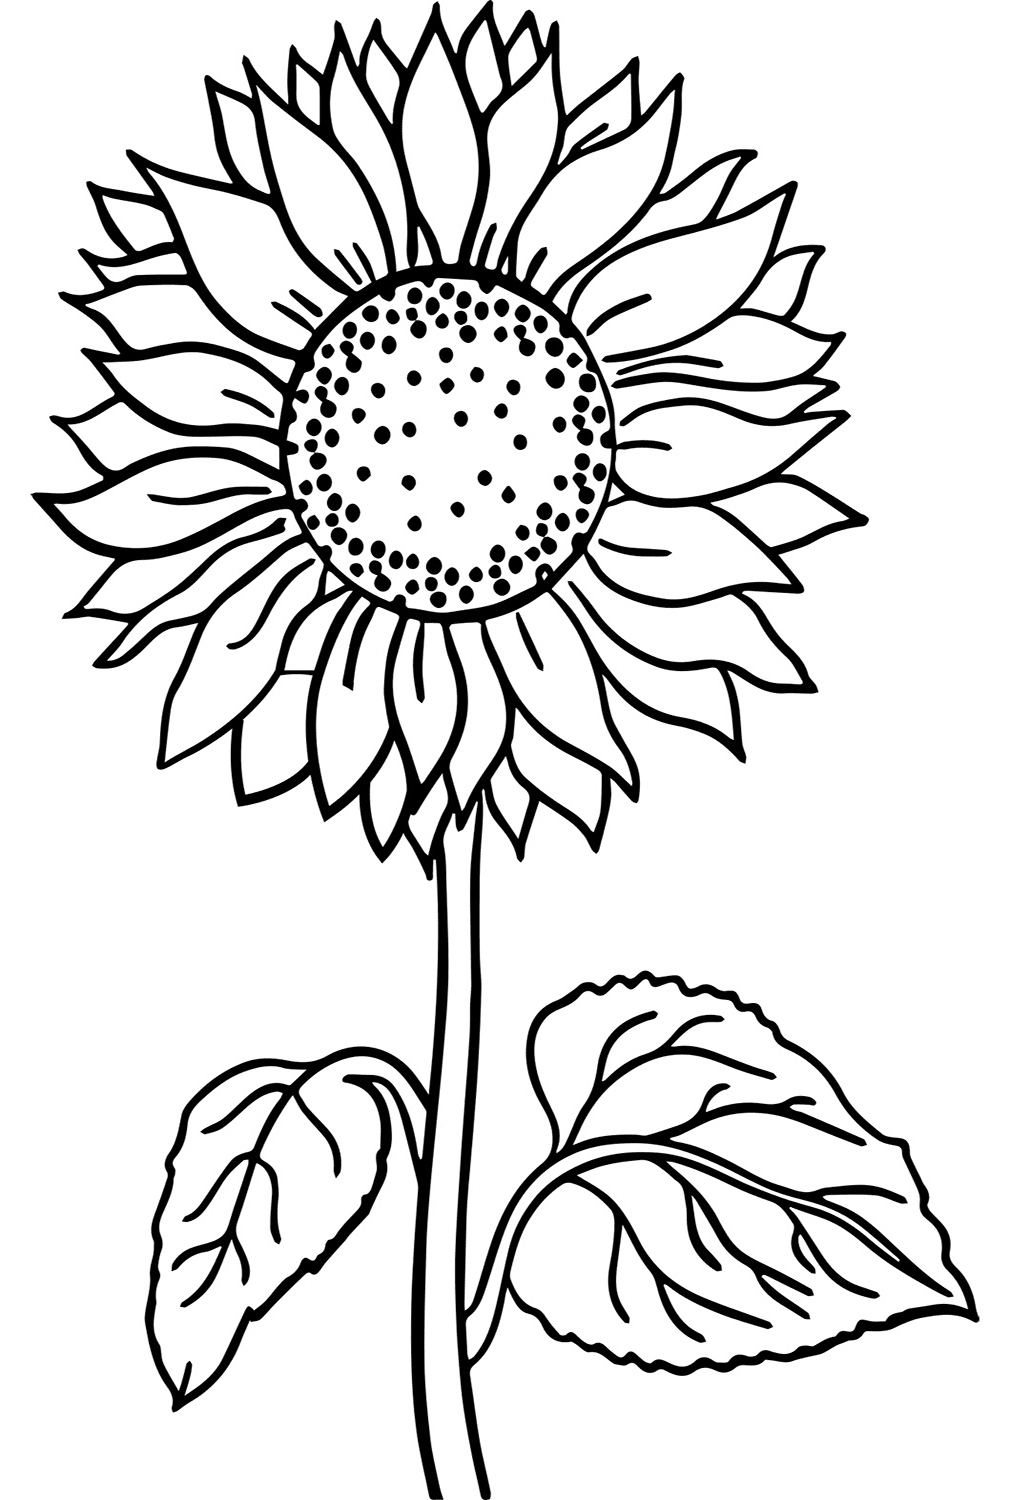 来自 Sunflower 的免费简单向日葵